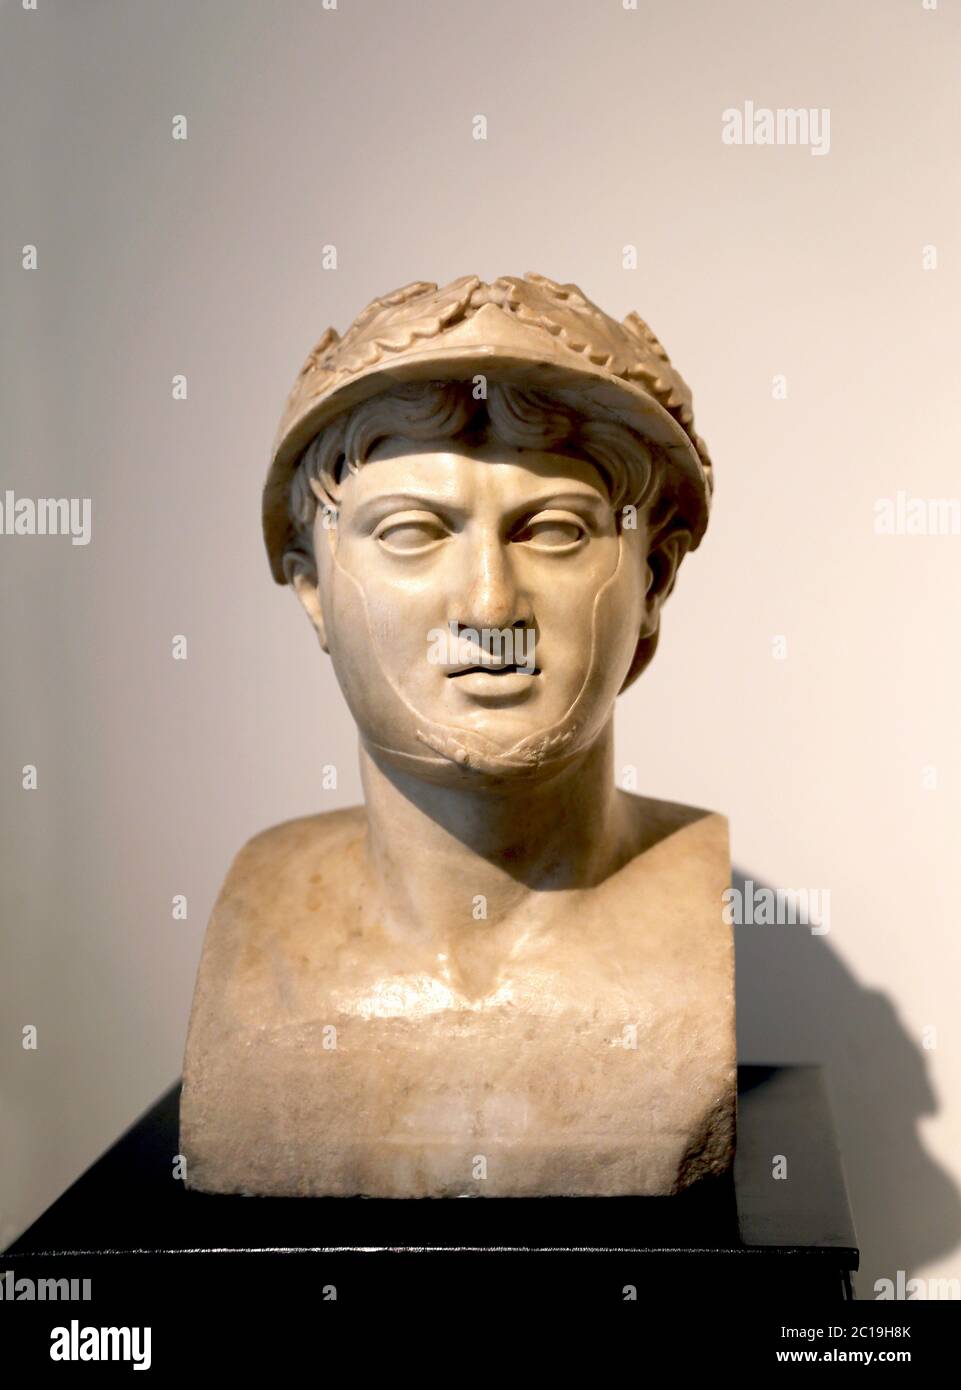 pyrrhus von epirus c 319 272 v chr romischer marmor 1 jahrhundert v chr villa dei papyri herculaneum archaologisches museum neapel italien 2c19h8k